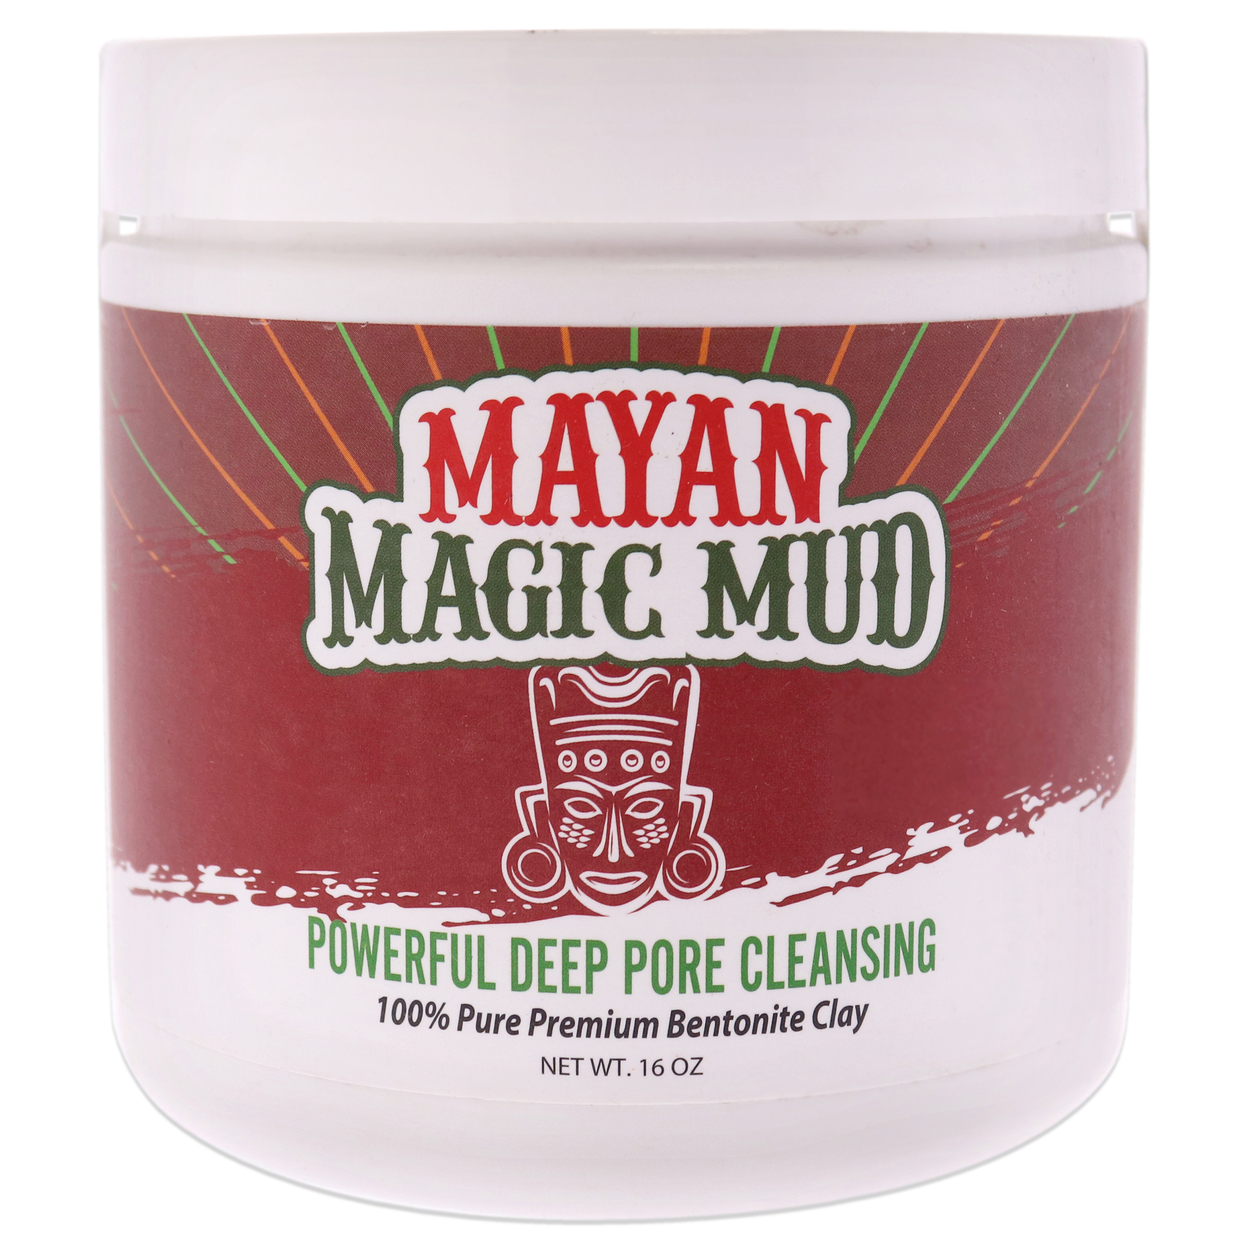 Mayan Magic Mud Powerful Deep Pore Cleansing Sodium Bentonite Clay Cleanser 16 Oz